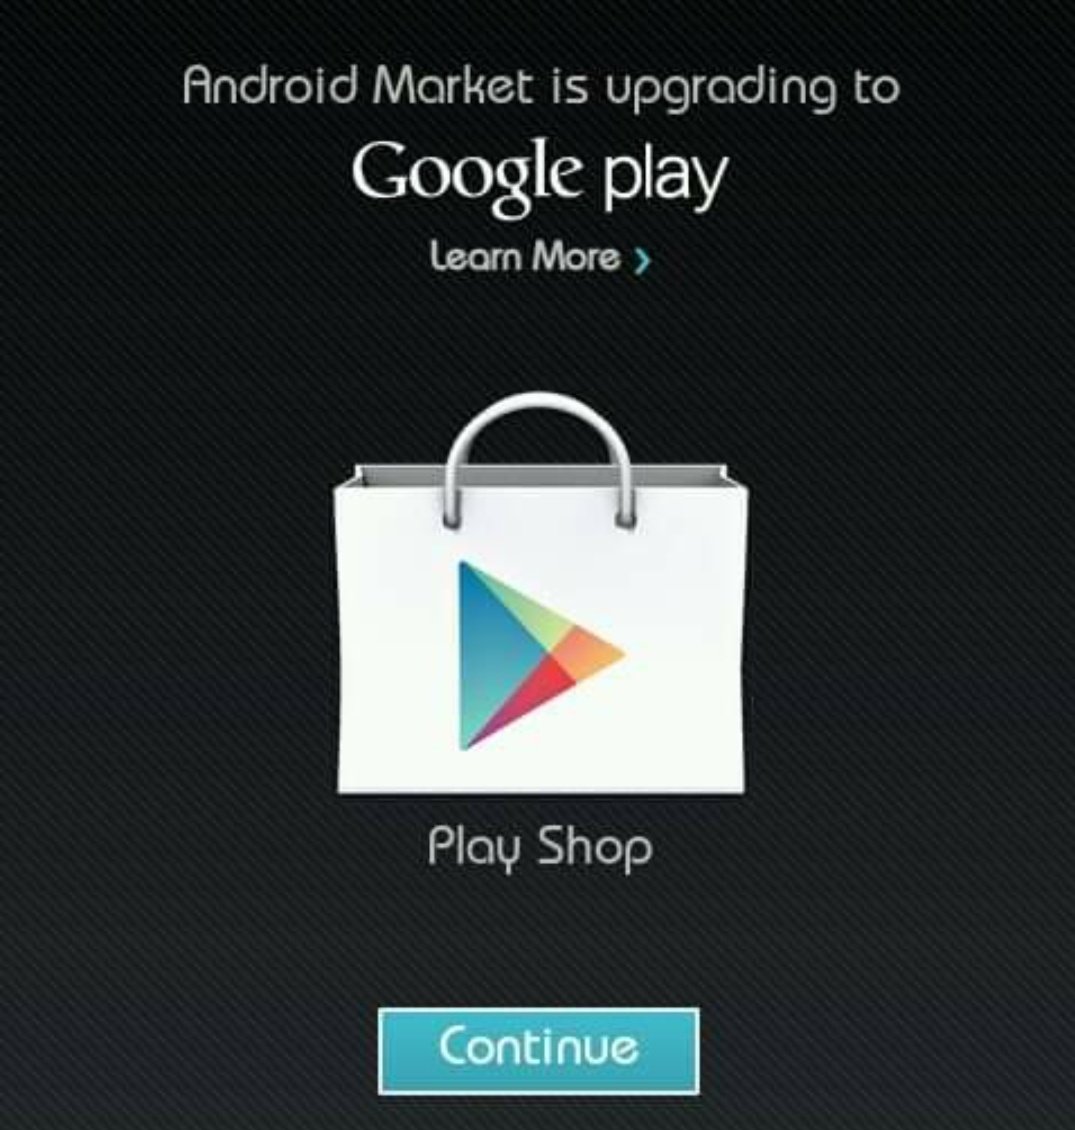 Плей маркет 01. Плей Маркет. Плей Маркет фото. Андроид Маркет. Google Play Market (плей Маркет).